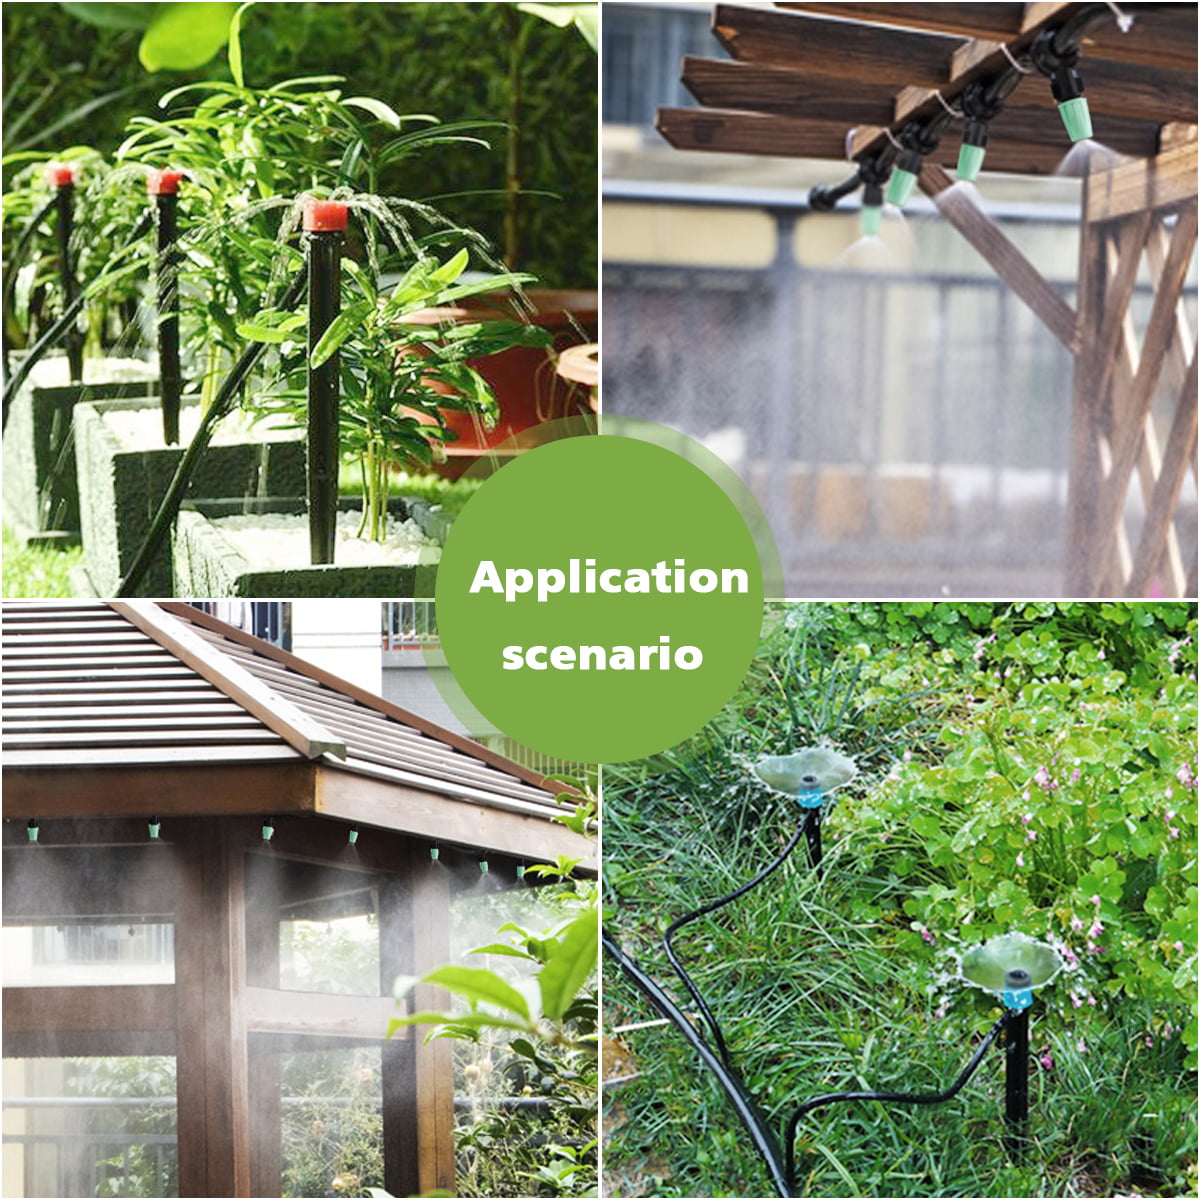 king do way 40M Garten Bewässerungssystem DIY Micro Automatische Gewächshaus Sprinkler für Balkon & Terrasse Micro Drip Gartenbewässerung Pflanzen-Bewässerungs-System